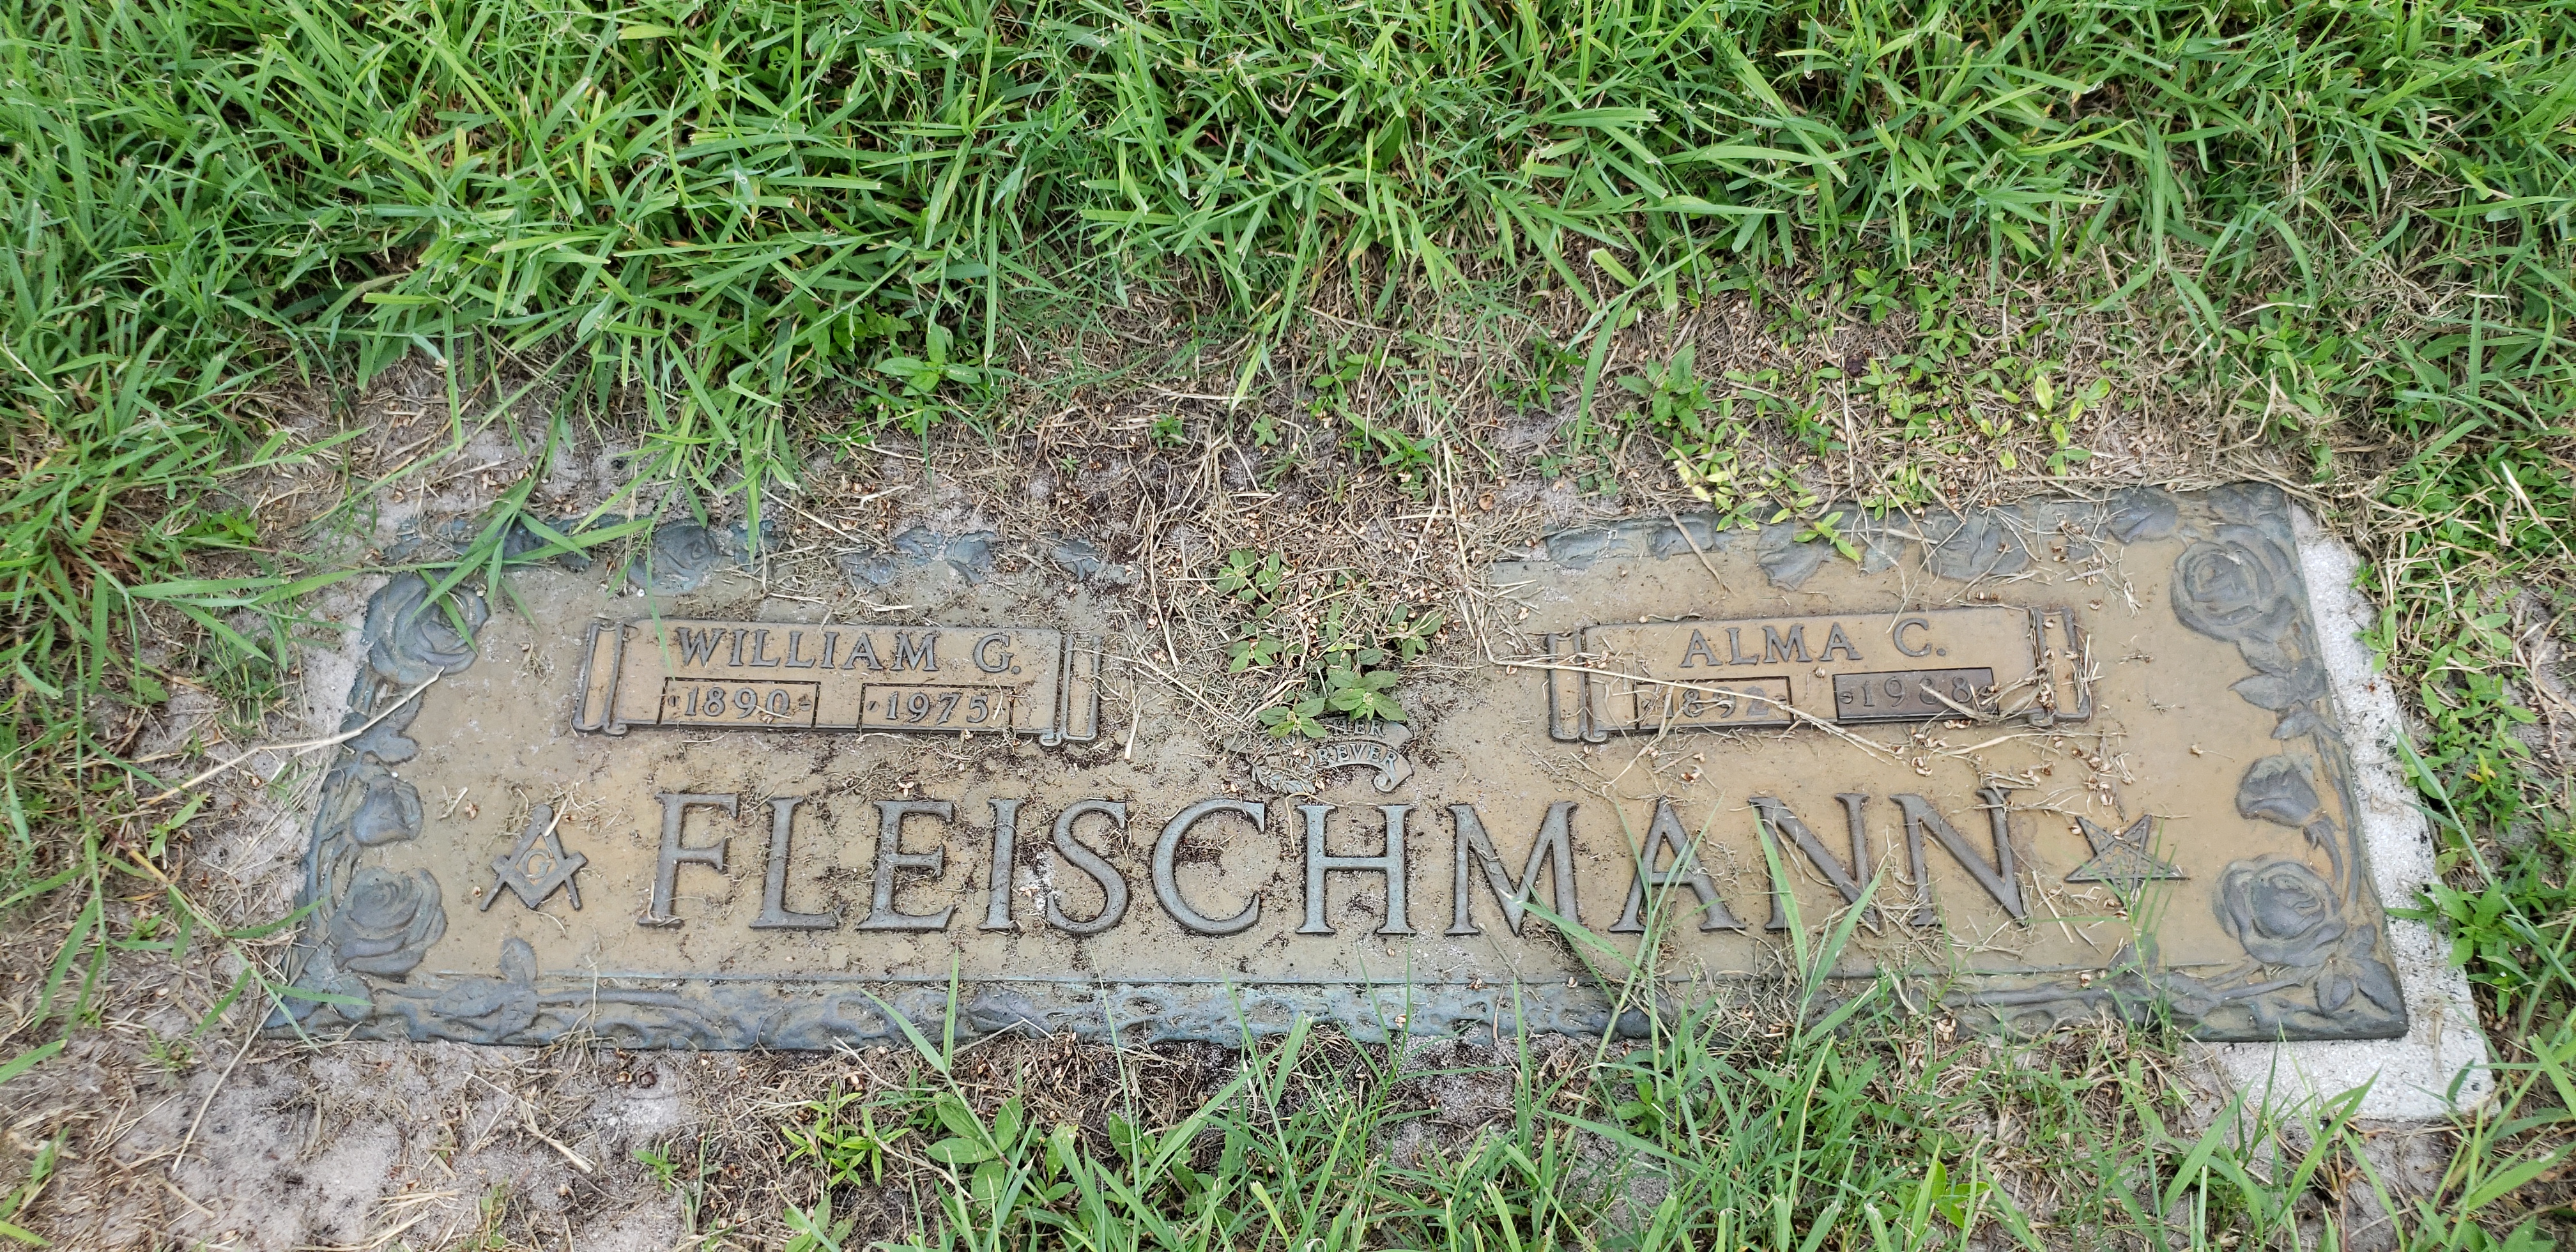 Alma C Fleischmann